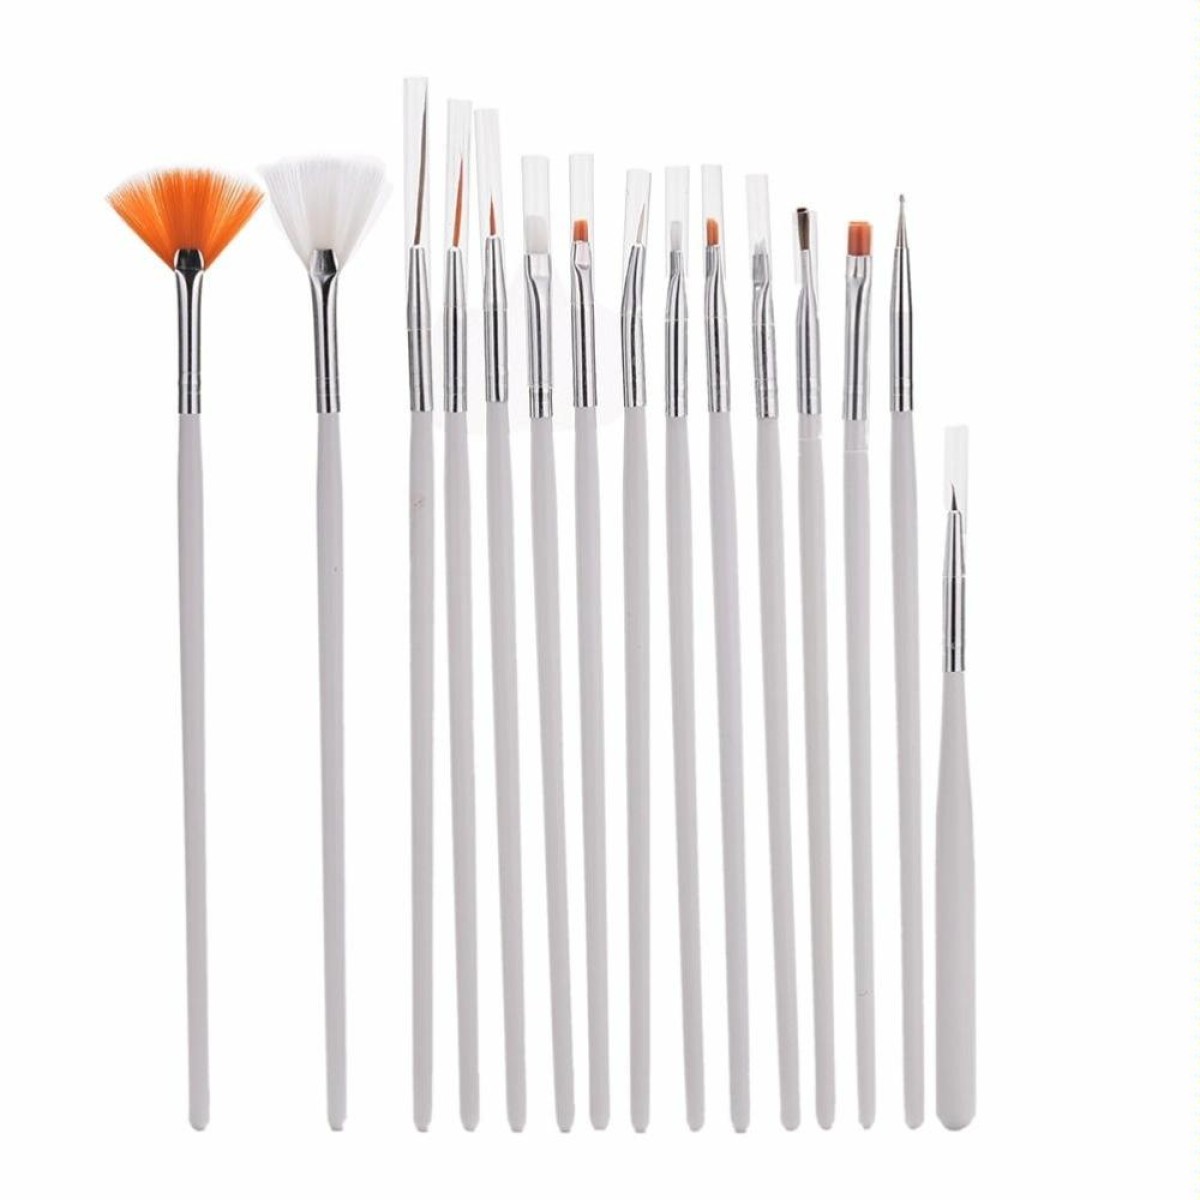 15 PCS/Set Nail Art Tools Brushes for Manicure Rhinestones Nails Decorations Nail Nrush Kit Painting Fingernail Tool Pen Kit